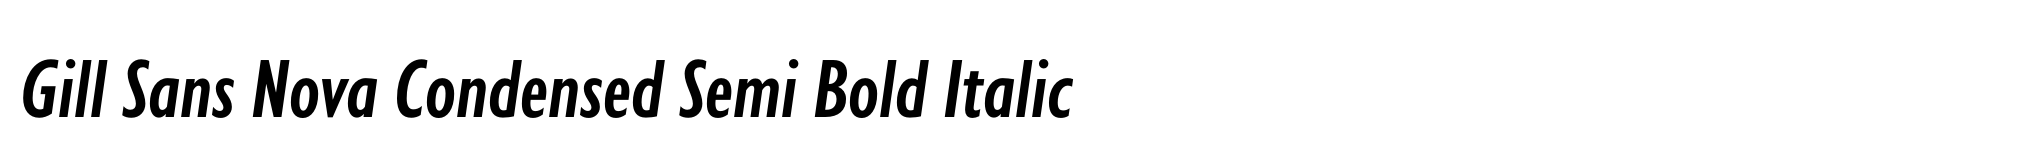 Gill Sans Nova Condensed Semi Bold Italic image